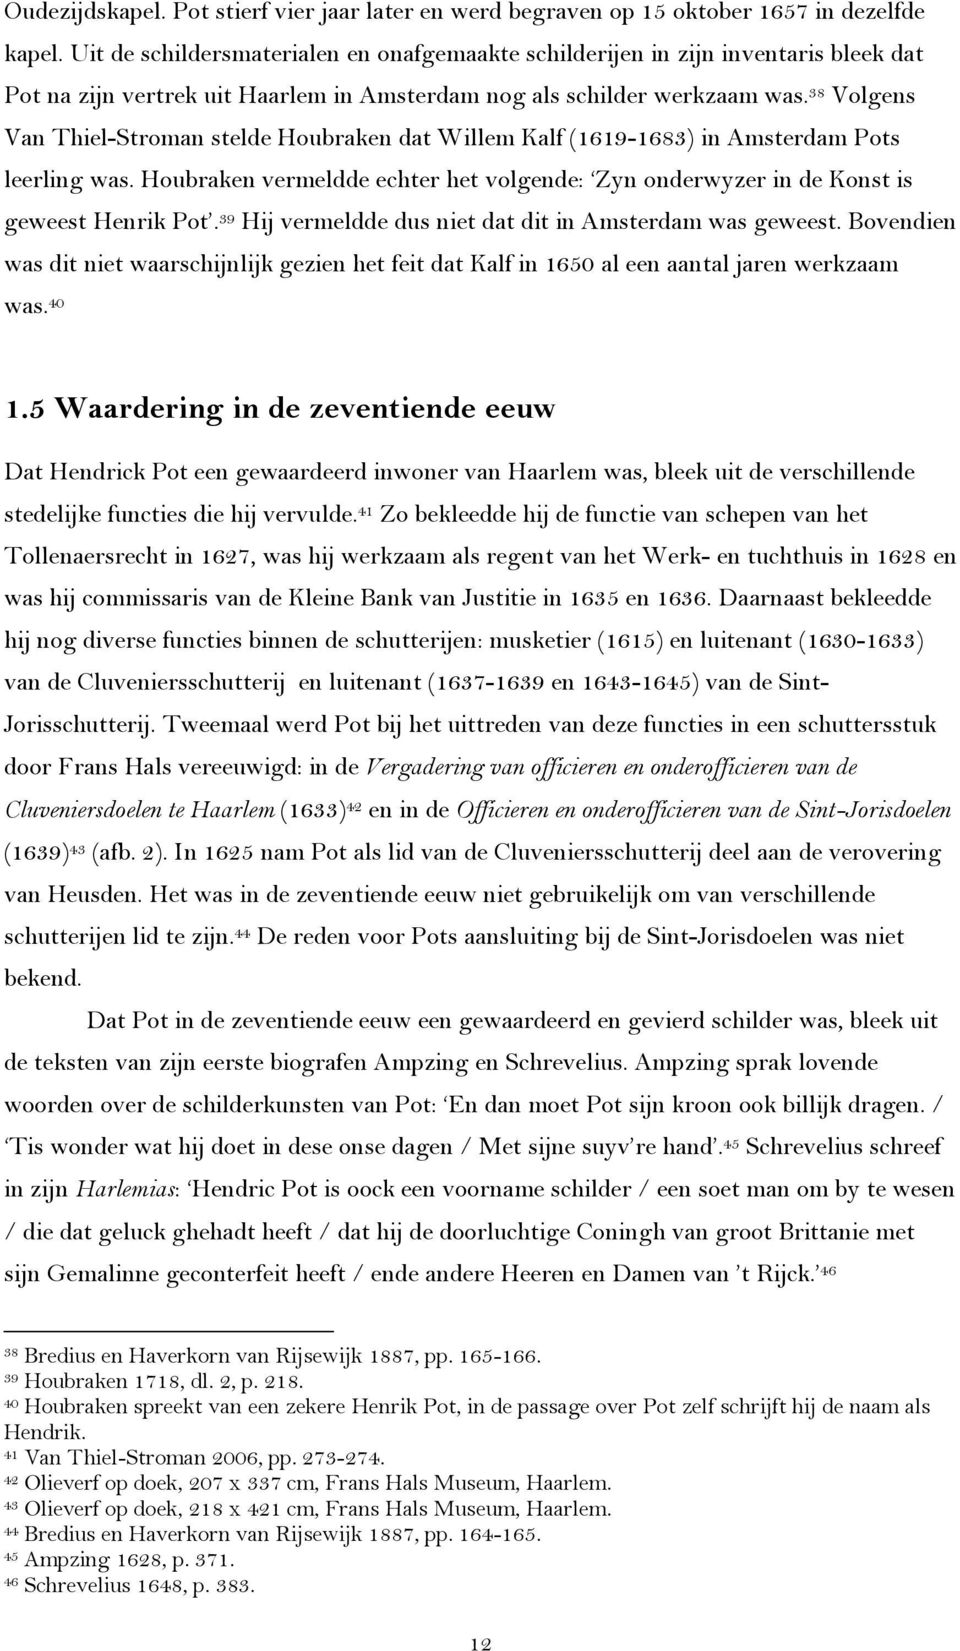 38 Volgens Van Thiel-Stroman stelde Houbraken dat Willem Kalf (1619-1683) in Amsterdam Pots leerling was. Houbraken vermeldde echter het volgende: Zyn onderwyzer in de Konst is geweest Henrik Pot.